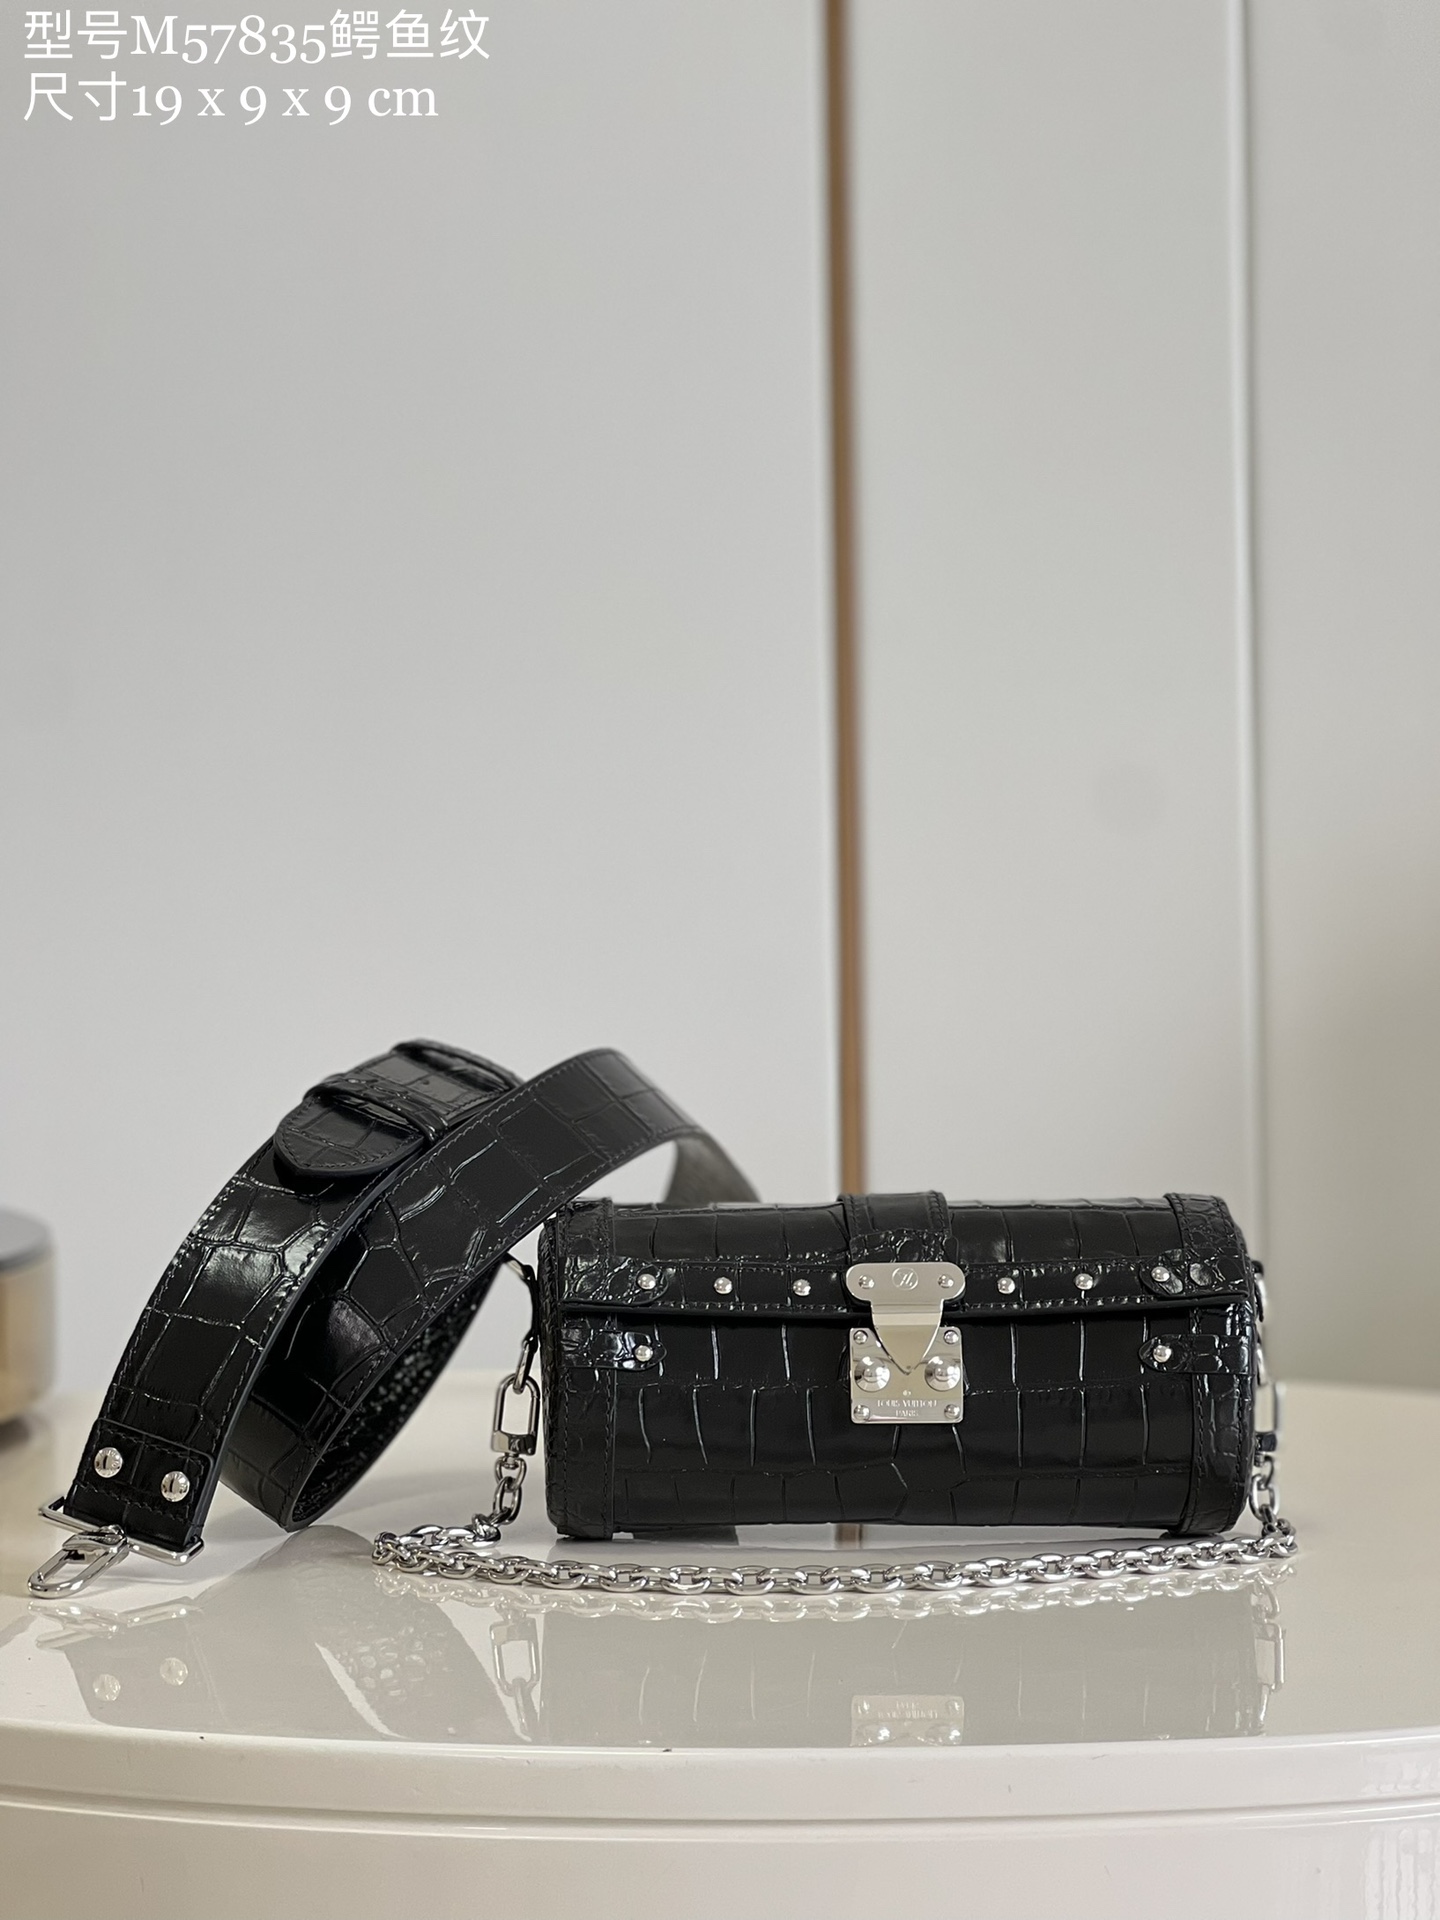 Louis Vuitton LV Papillon Trunk Bags Handbags Crocodile Leather M57835